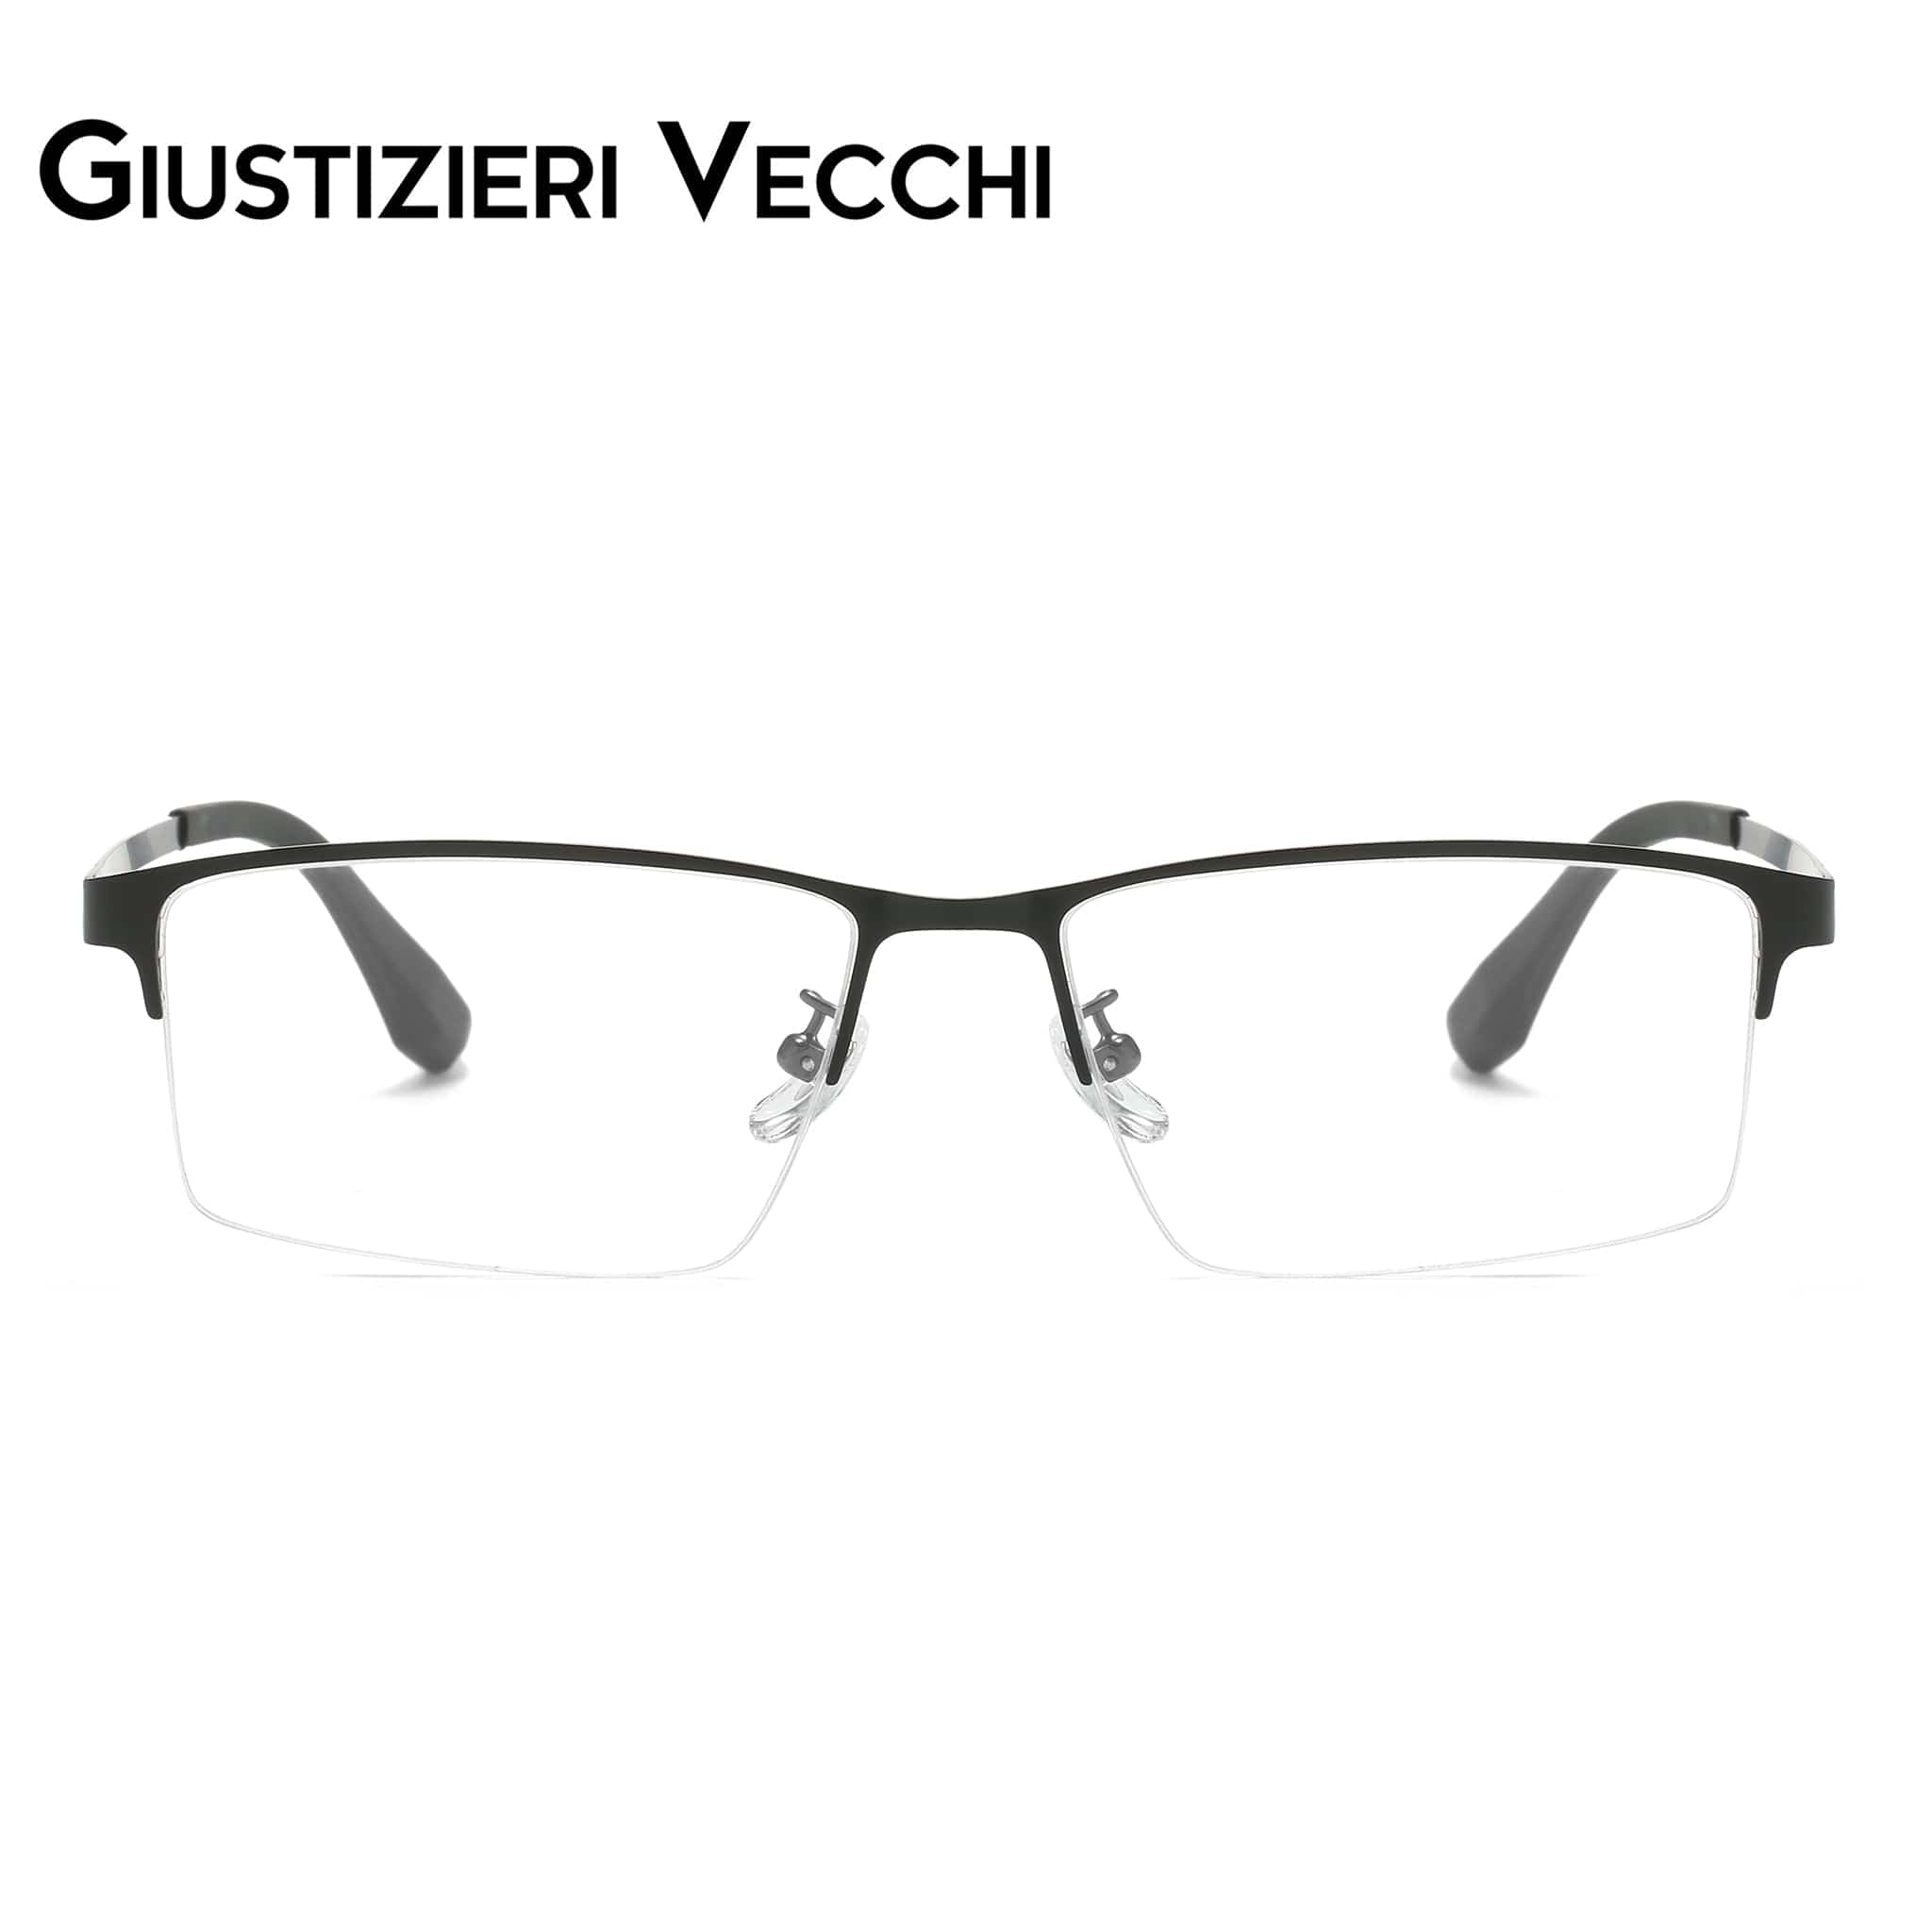 GIUSTIZIERI VECCHI Eyeglasses Brushed Gunmatal / Large FireFlow Uno